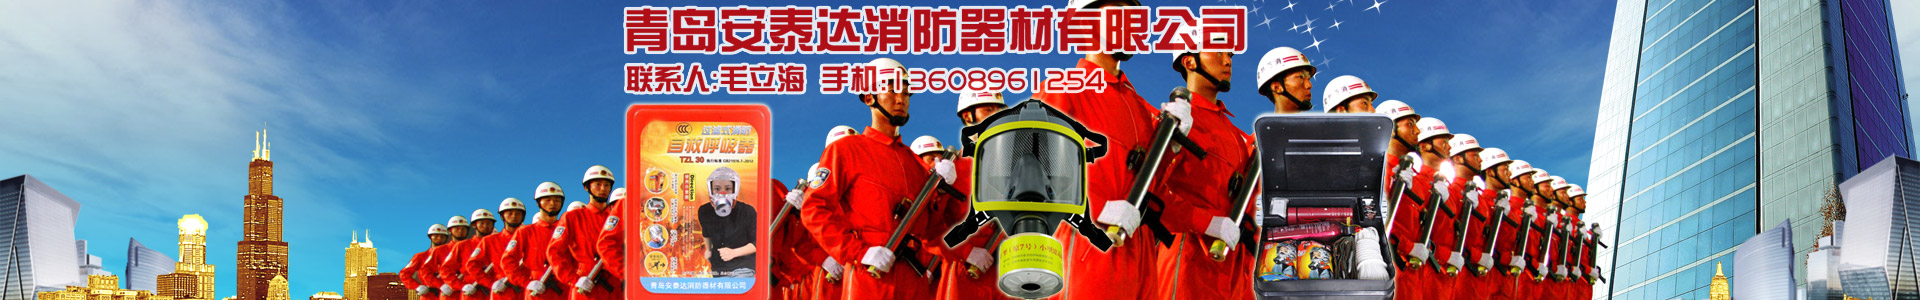 產品中心-青島安泰達消防器材有限公司-